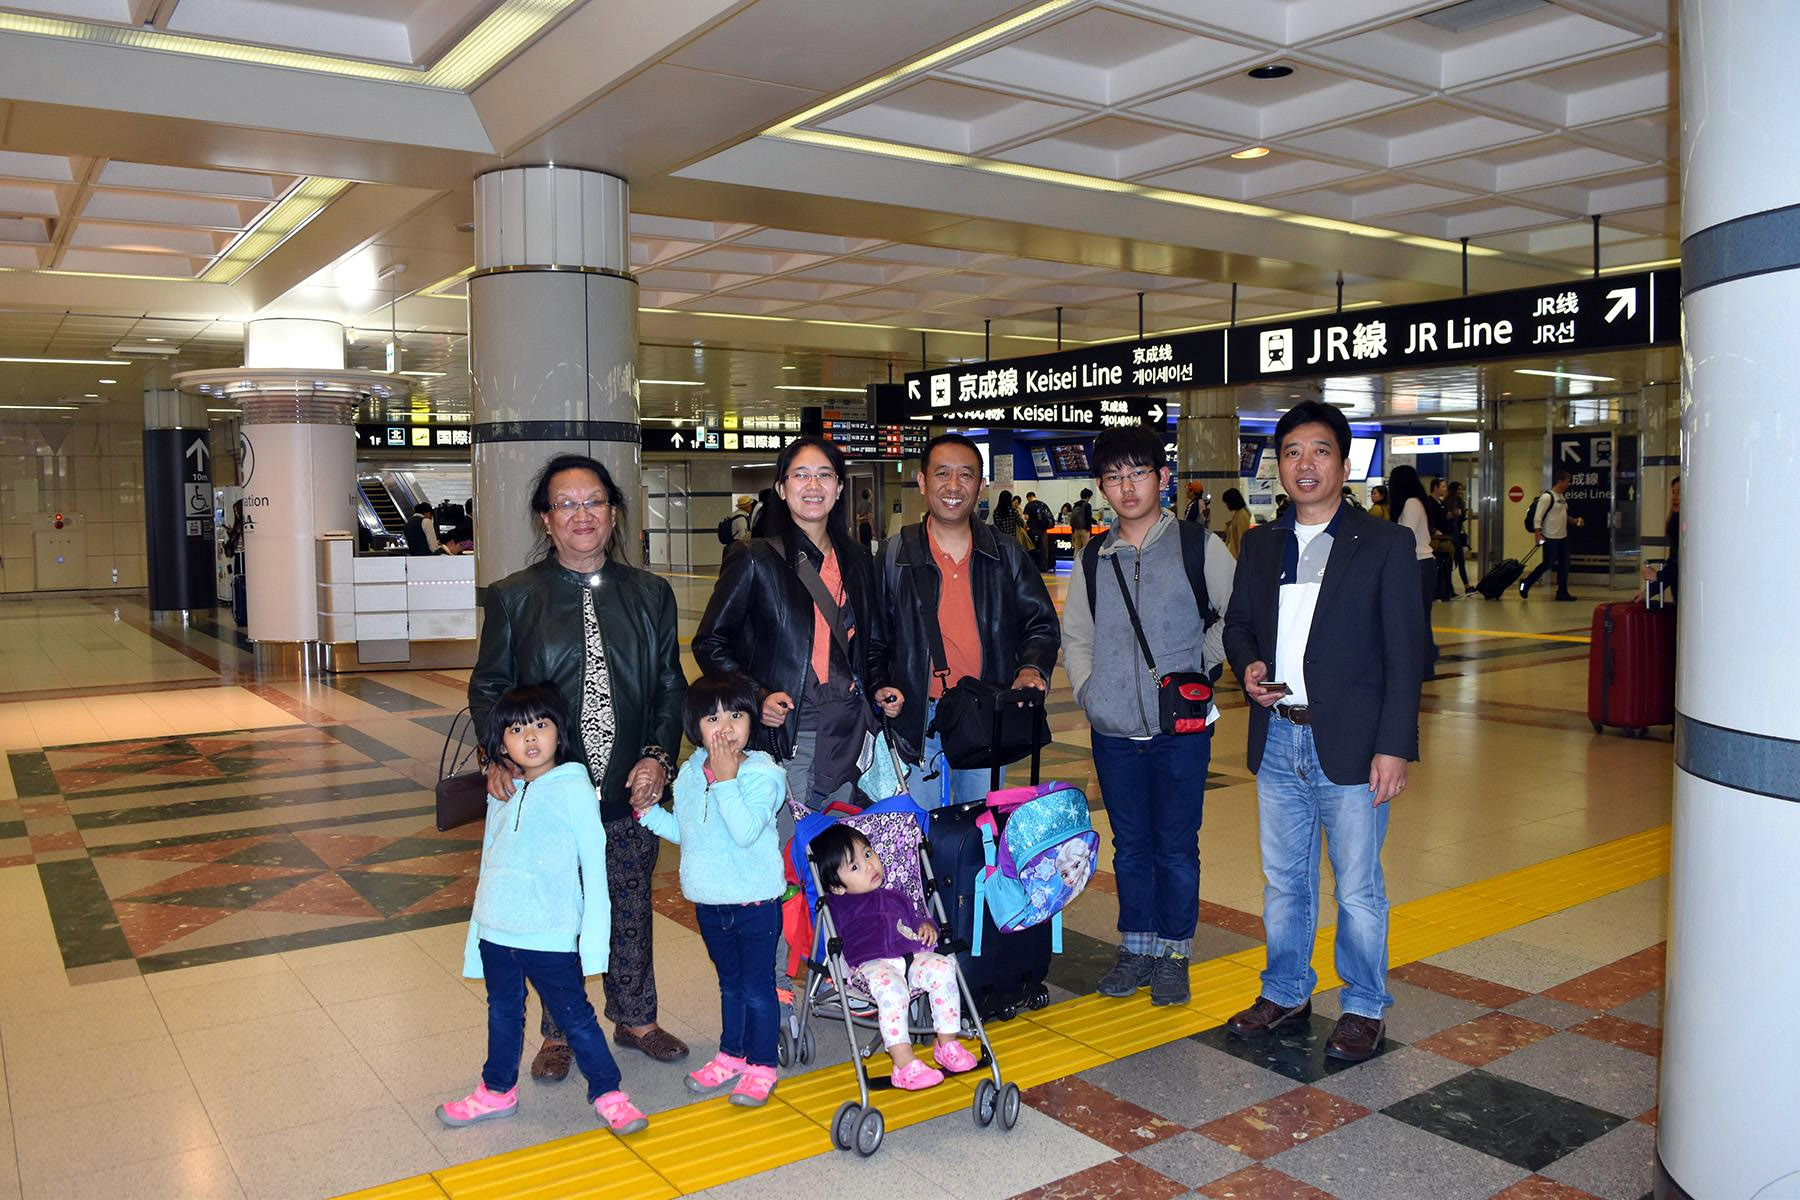 Narita airport station